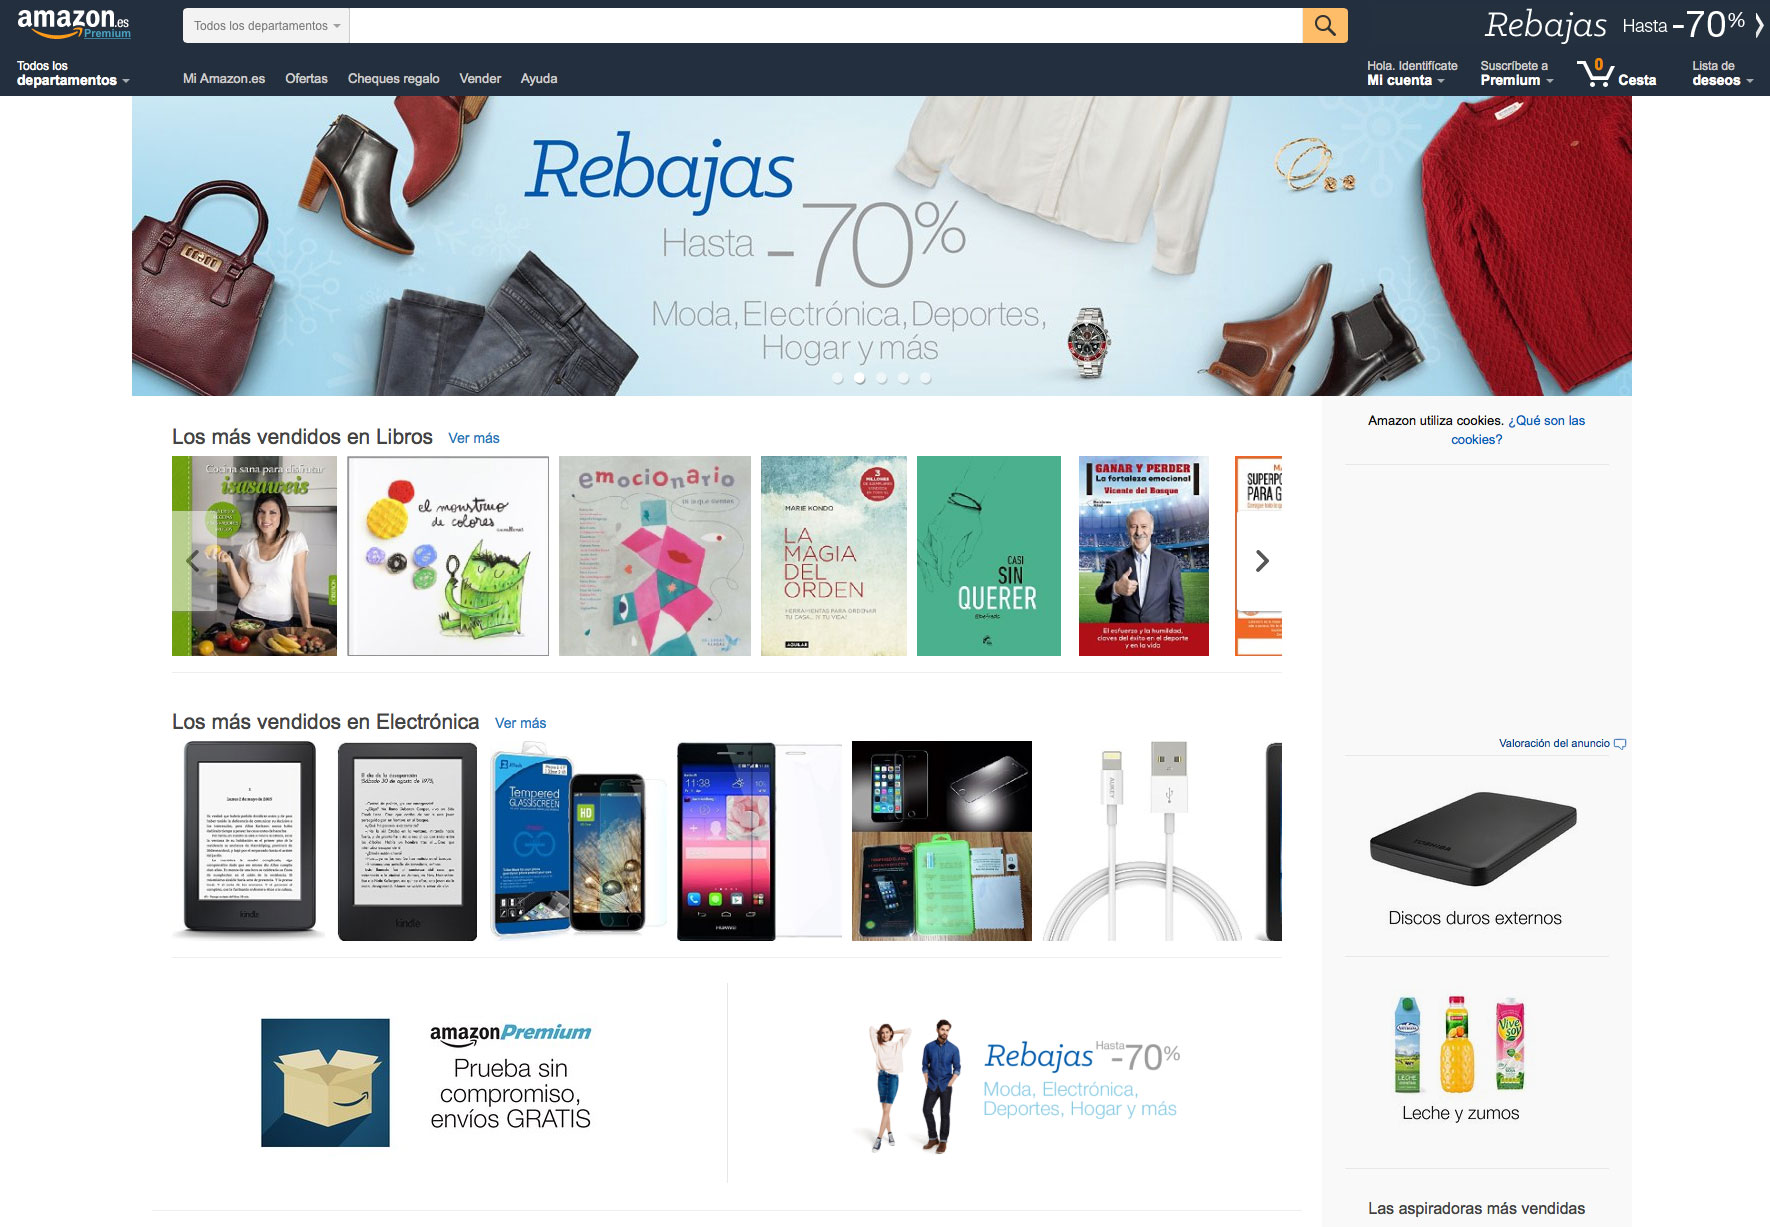 Landing pages de venda: Amazon